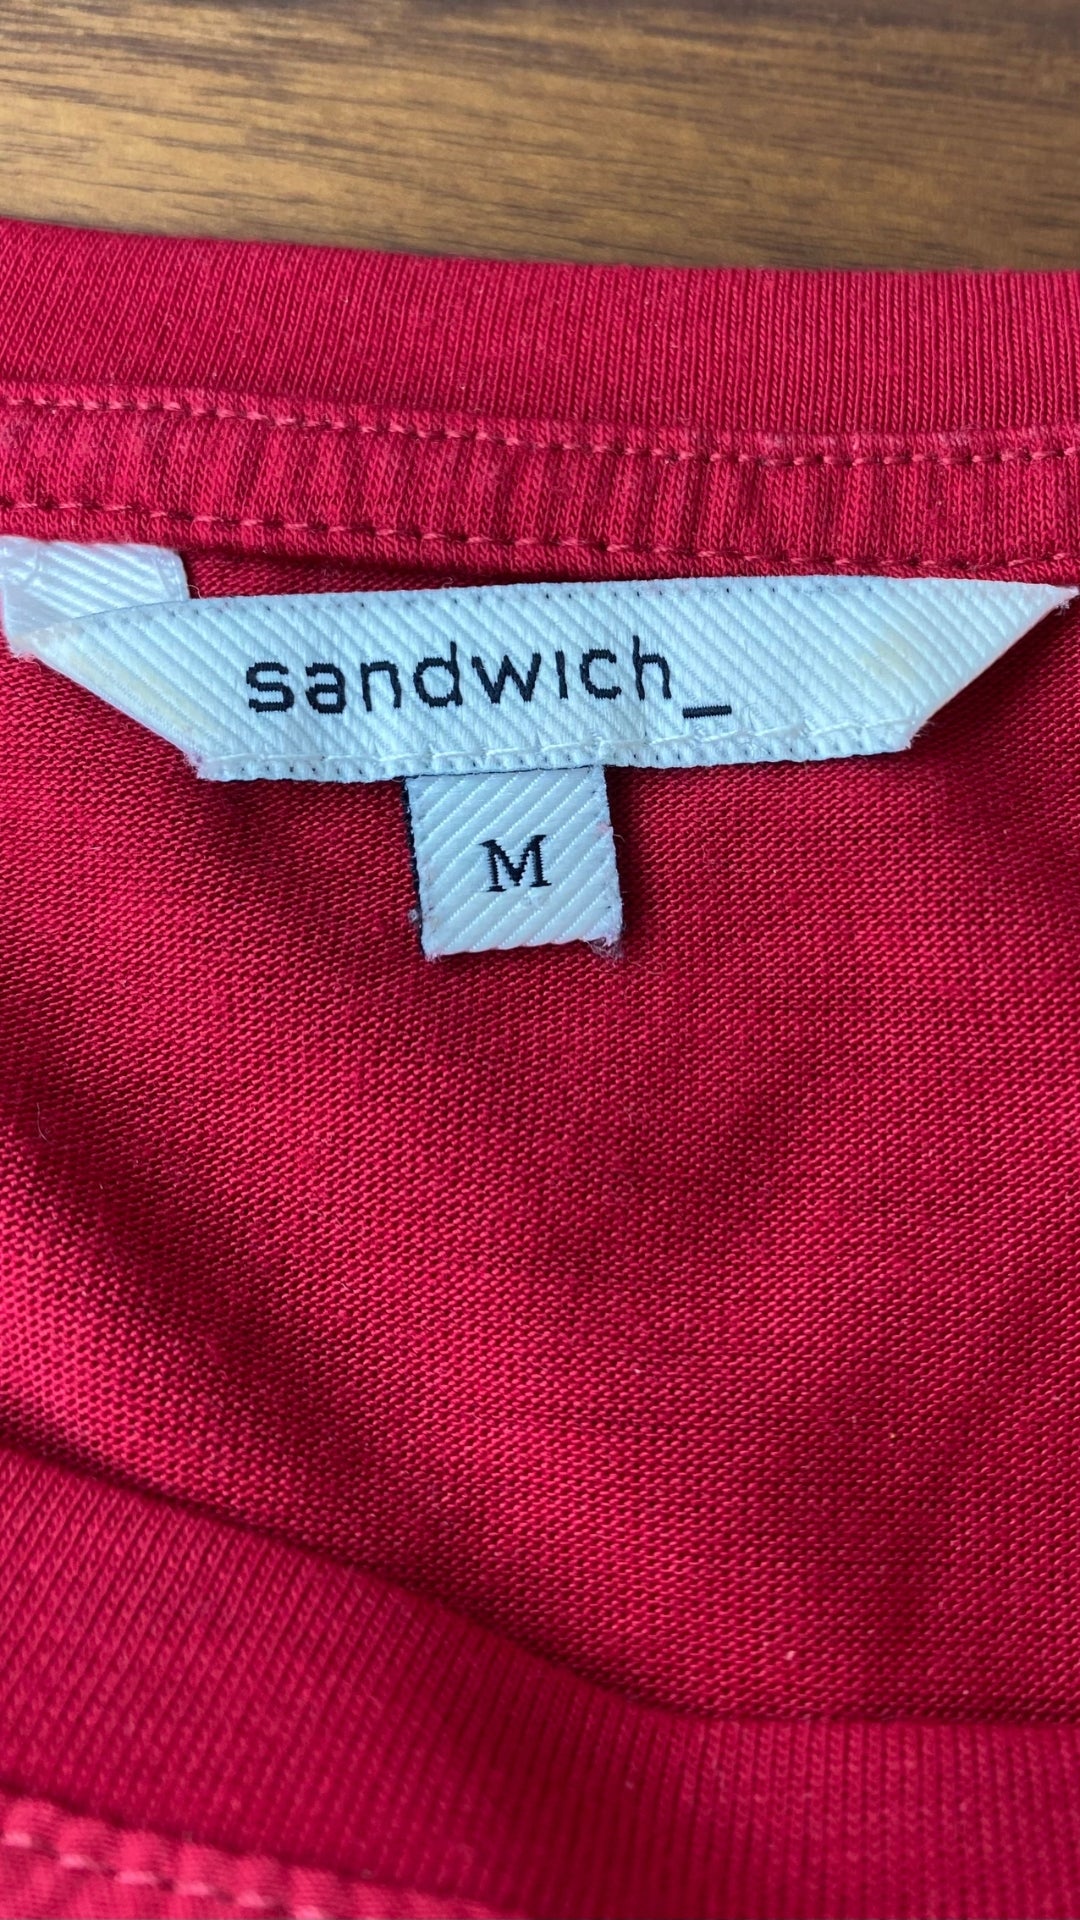 Chandail mince rouge ample bi-matière Sandwich, taille medium. Vue de l'étiquette de marque et taille.